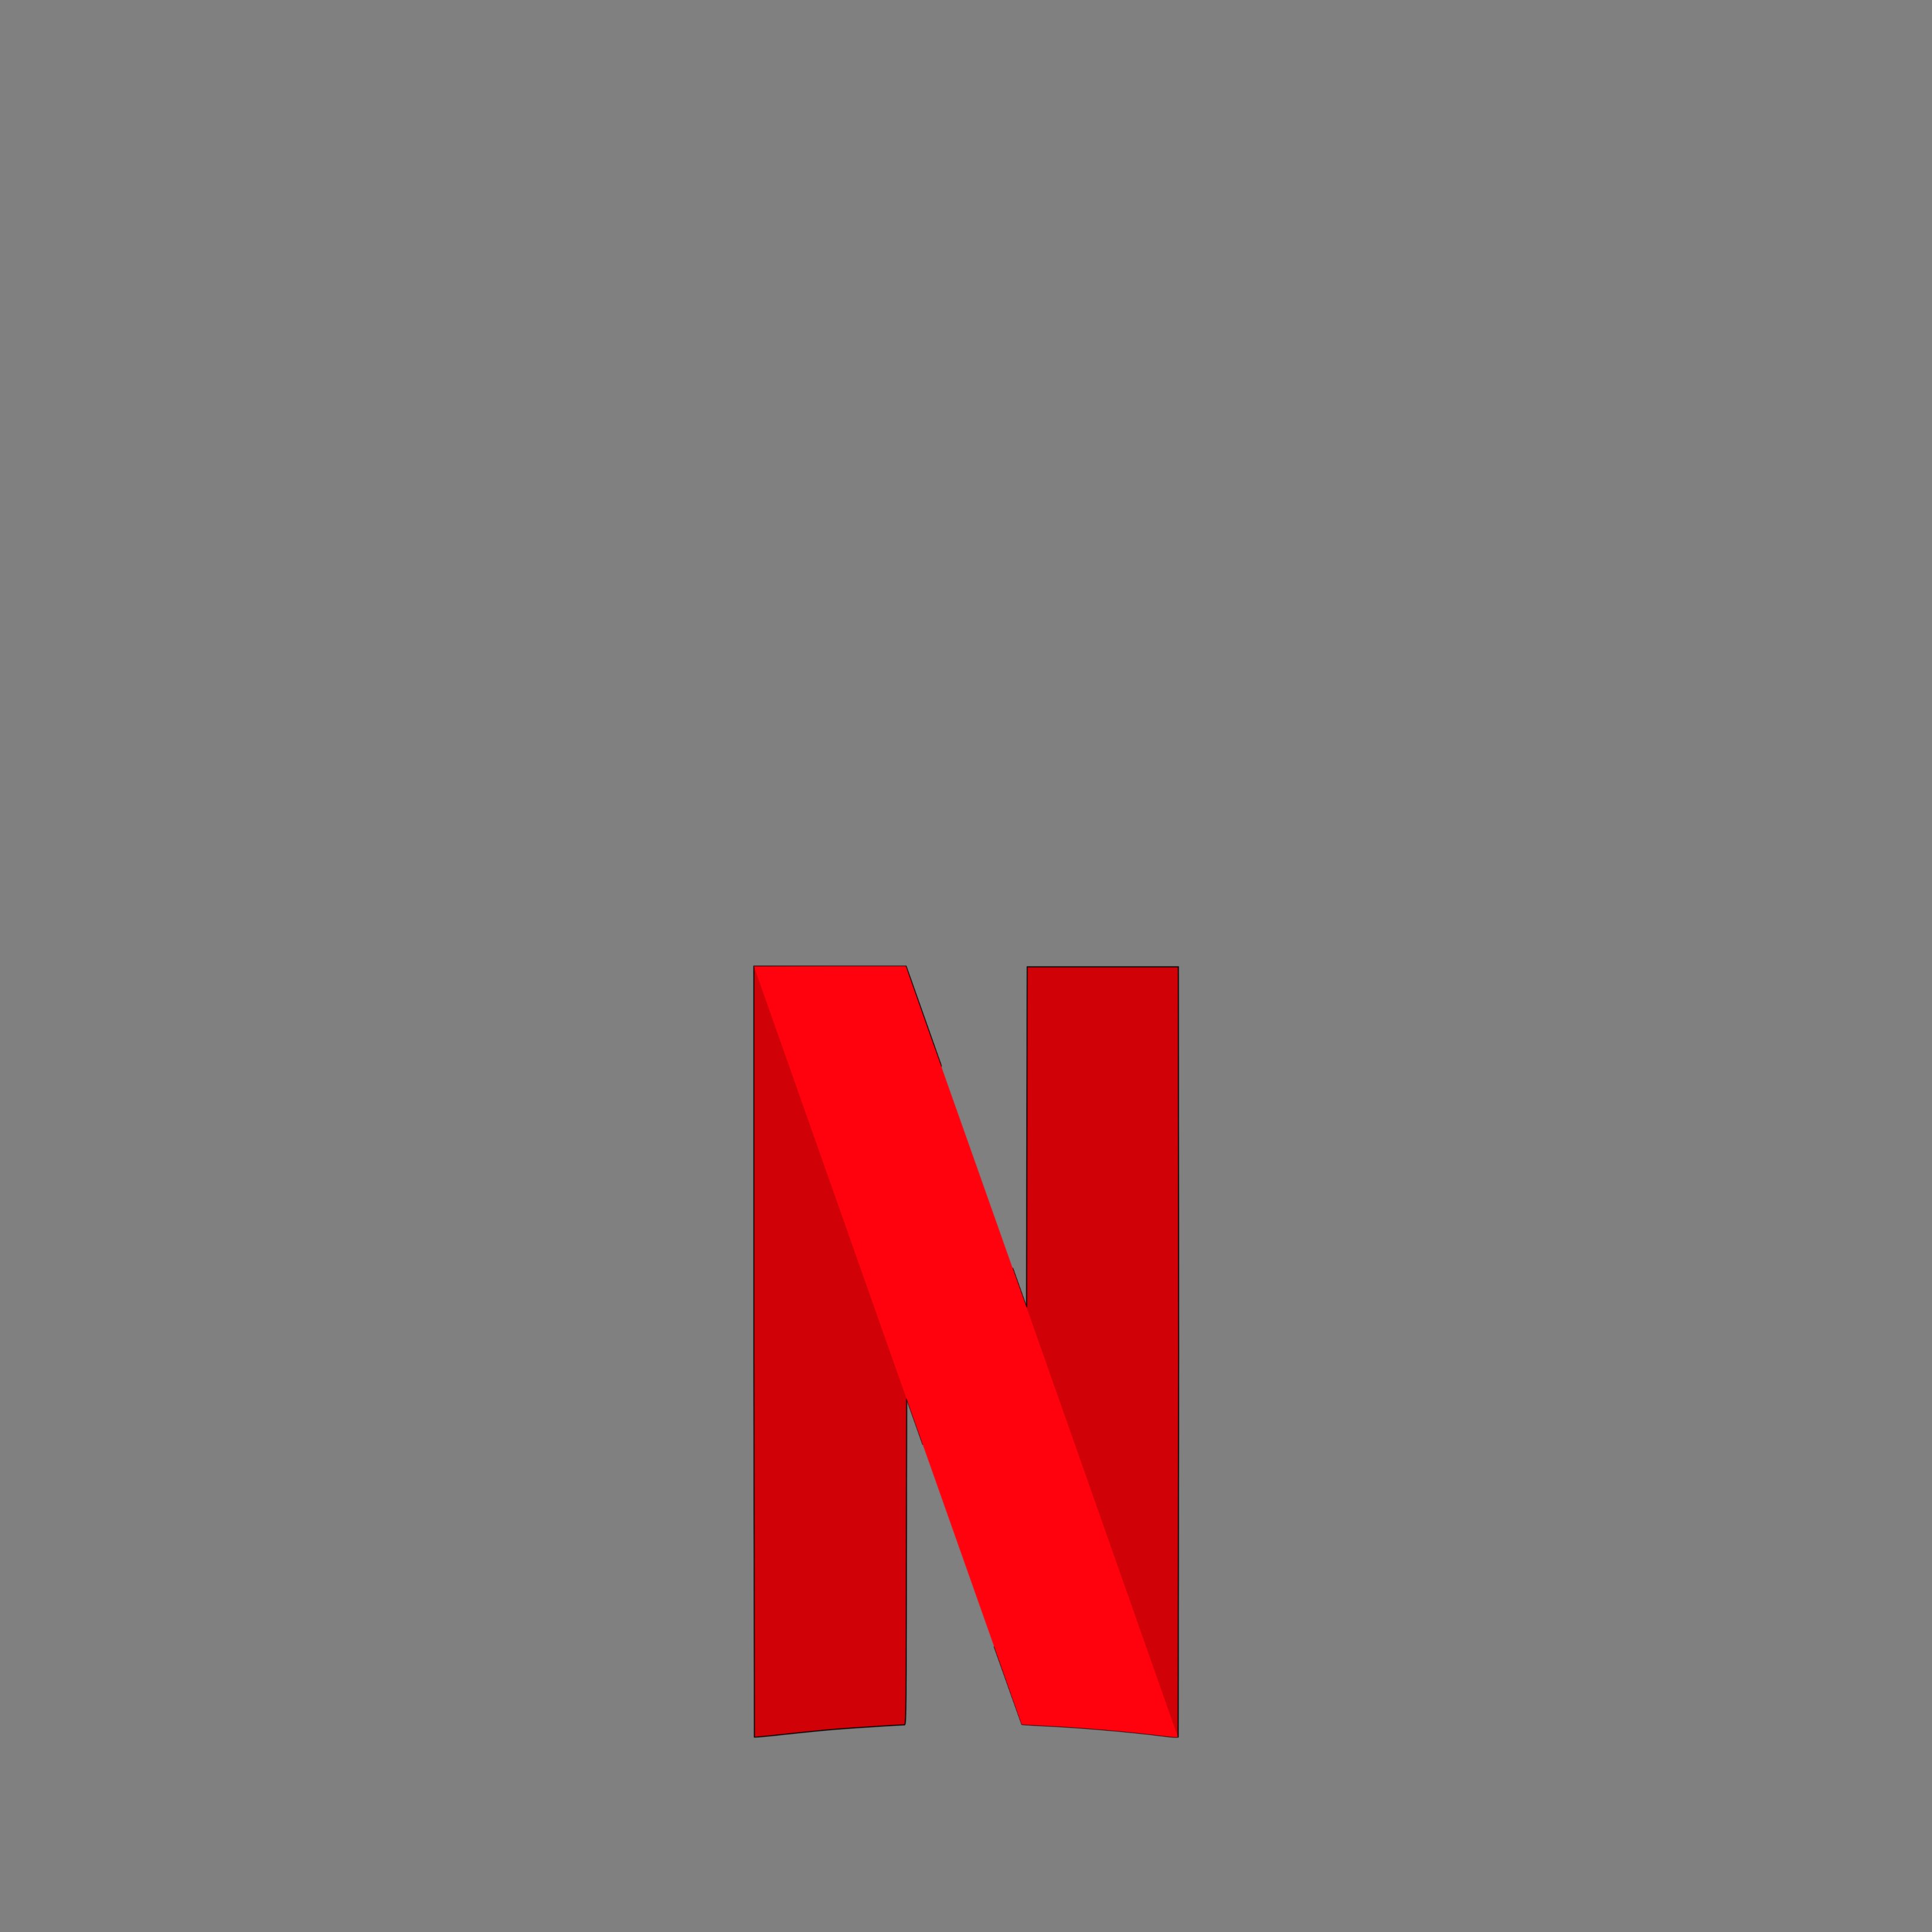 Alegra el teu confinament amb la nova Netflix Party